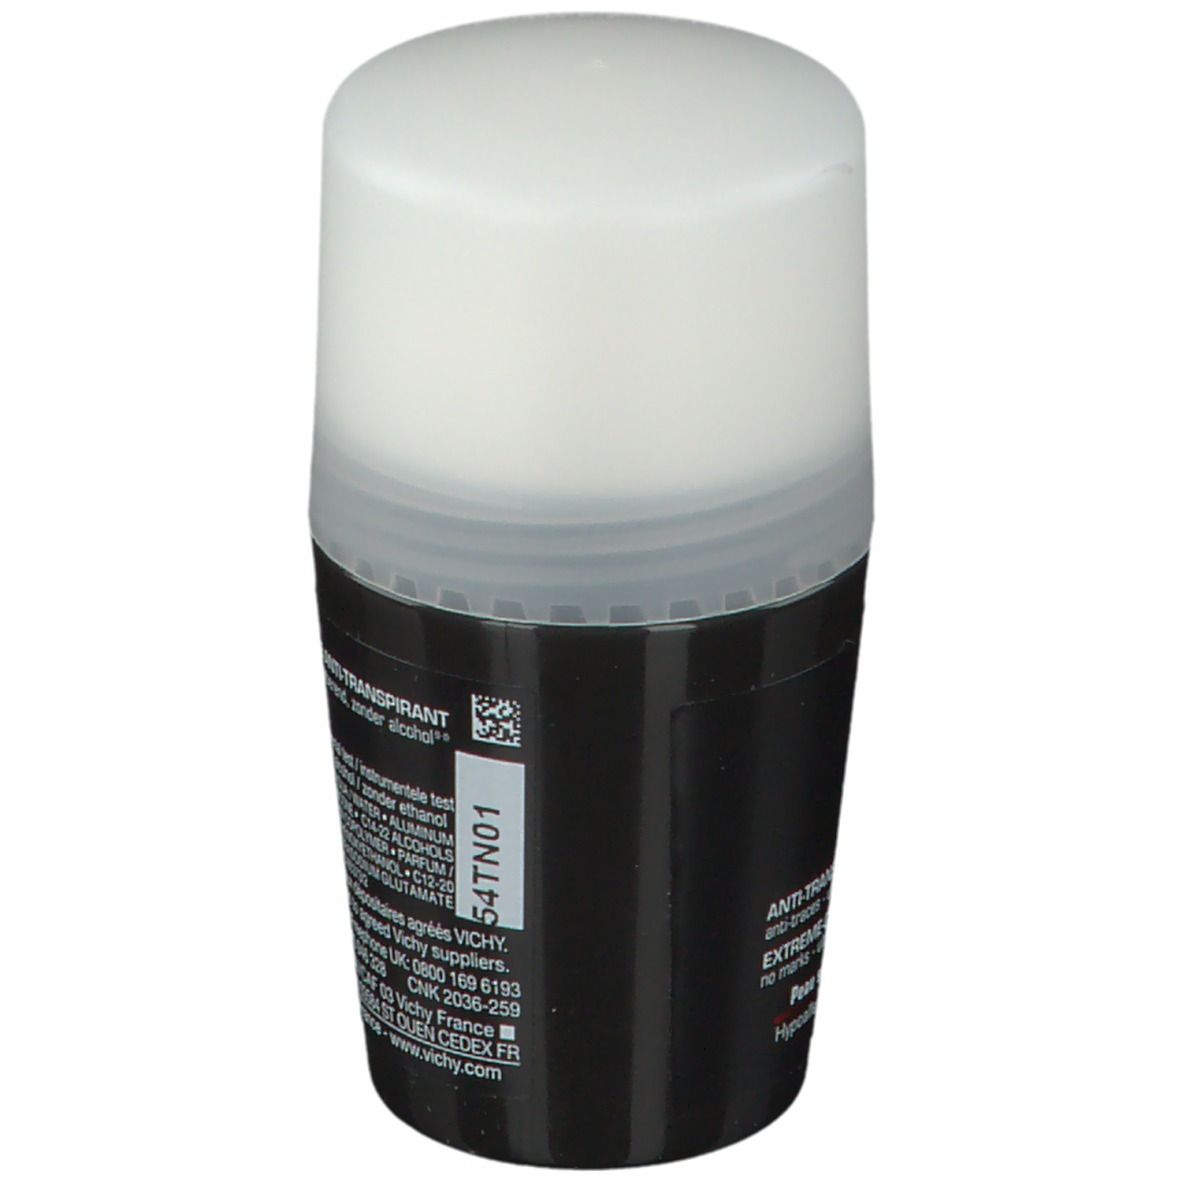 VICHY Homme Antitranspirant Deodorant Extreme Kontrolle für empfindliche Haut